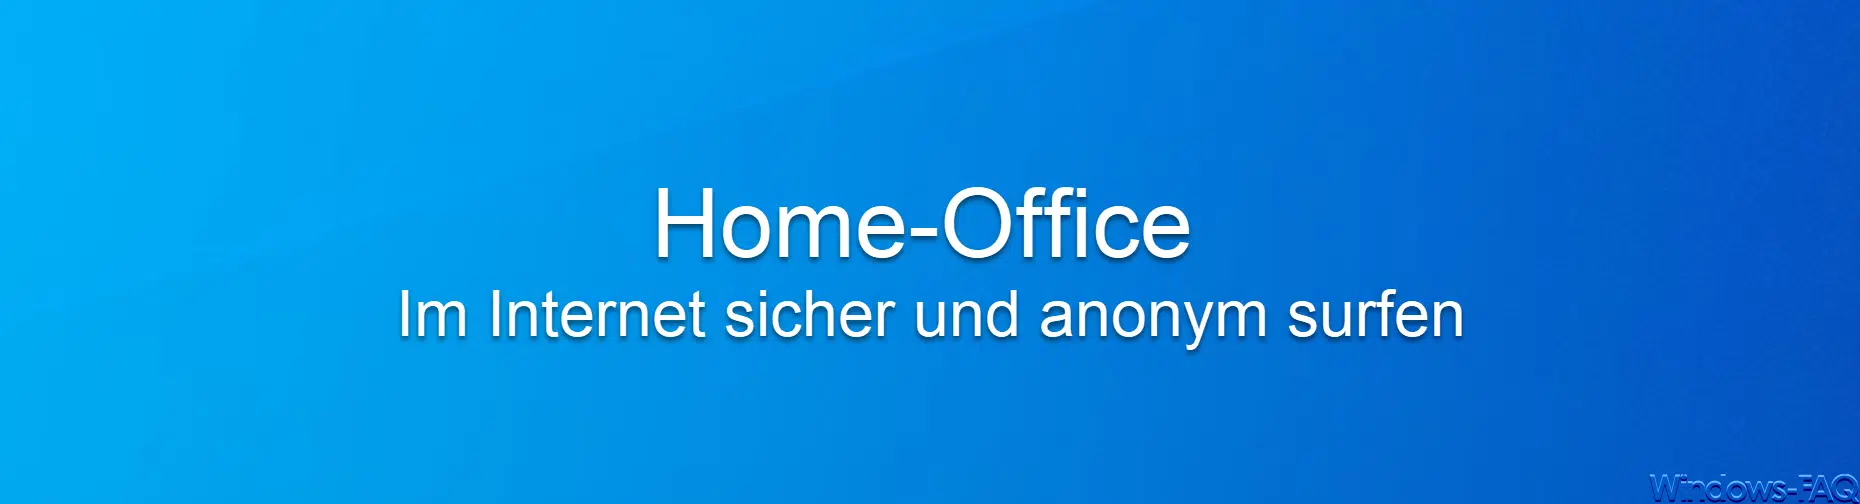 Neue Arbeitskultur „Home-Office“ : Internet sicher und anonym surfen